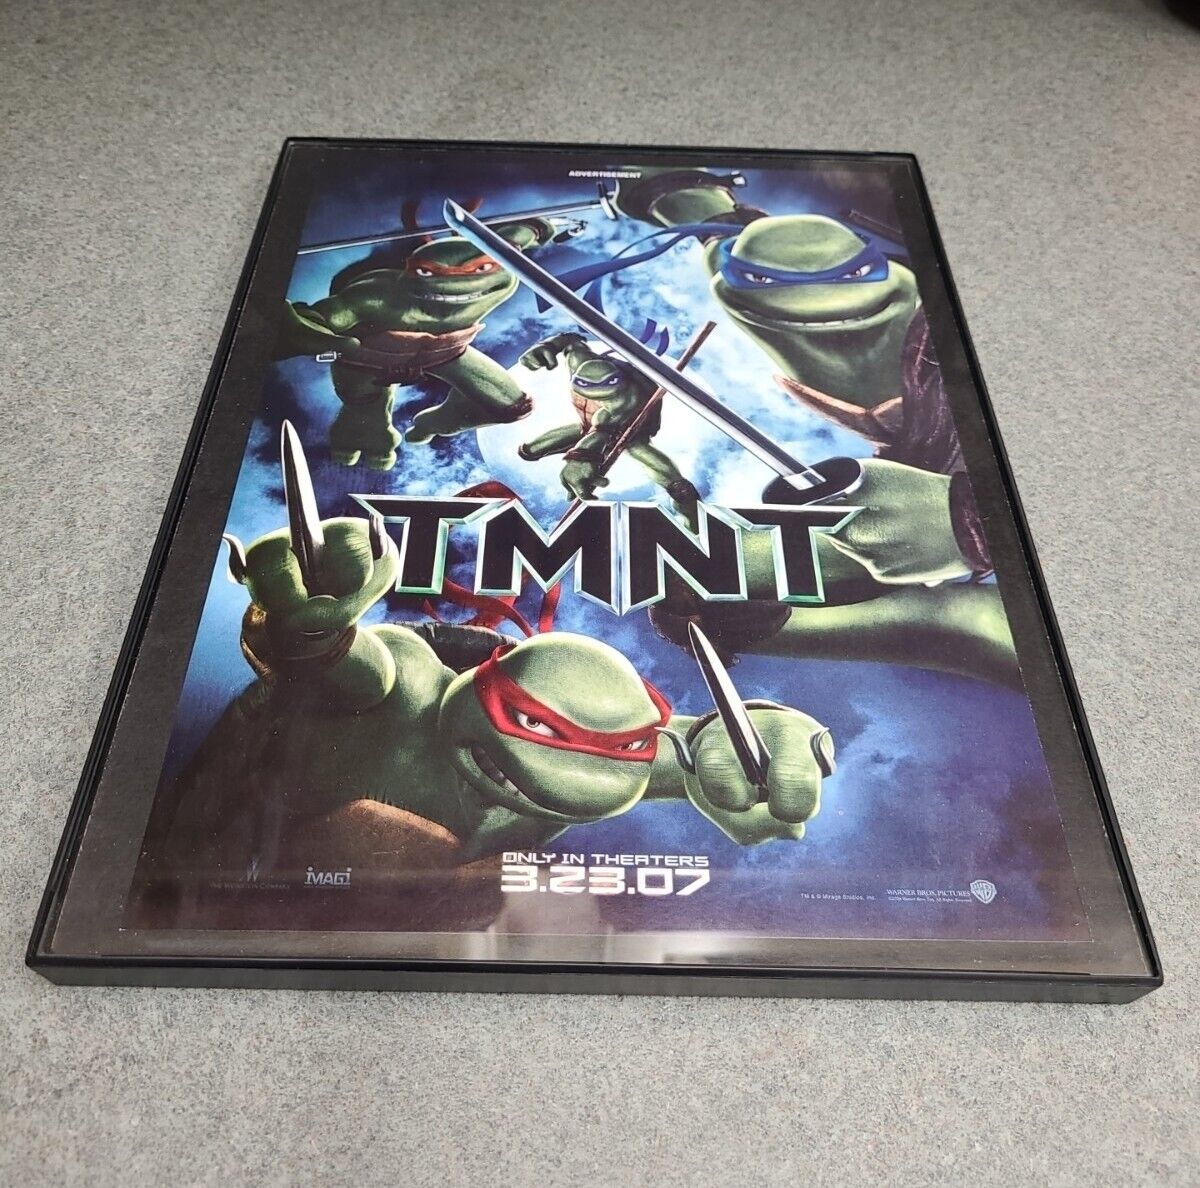 Tmnt 2007 Print Ad Teenage Mutant Ninja Turtles Movie Framed 8.5x11 